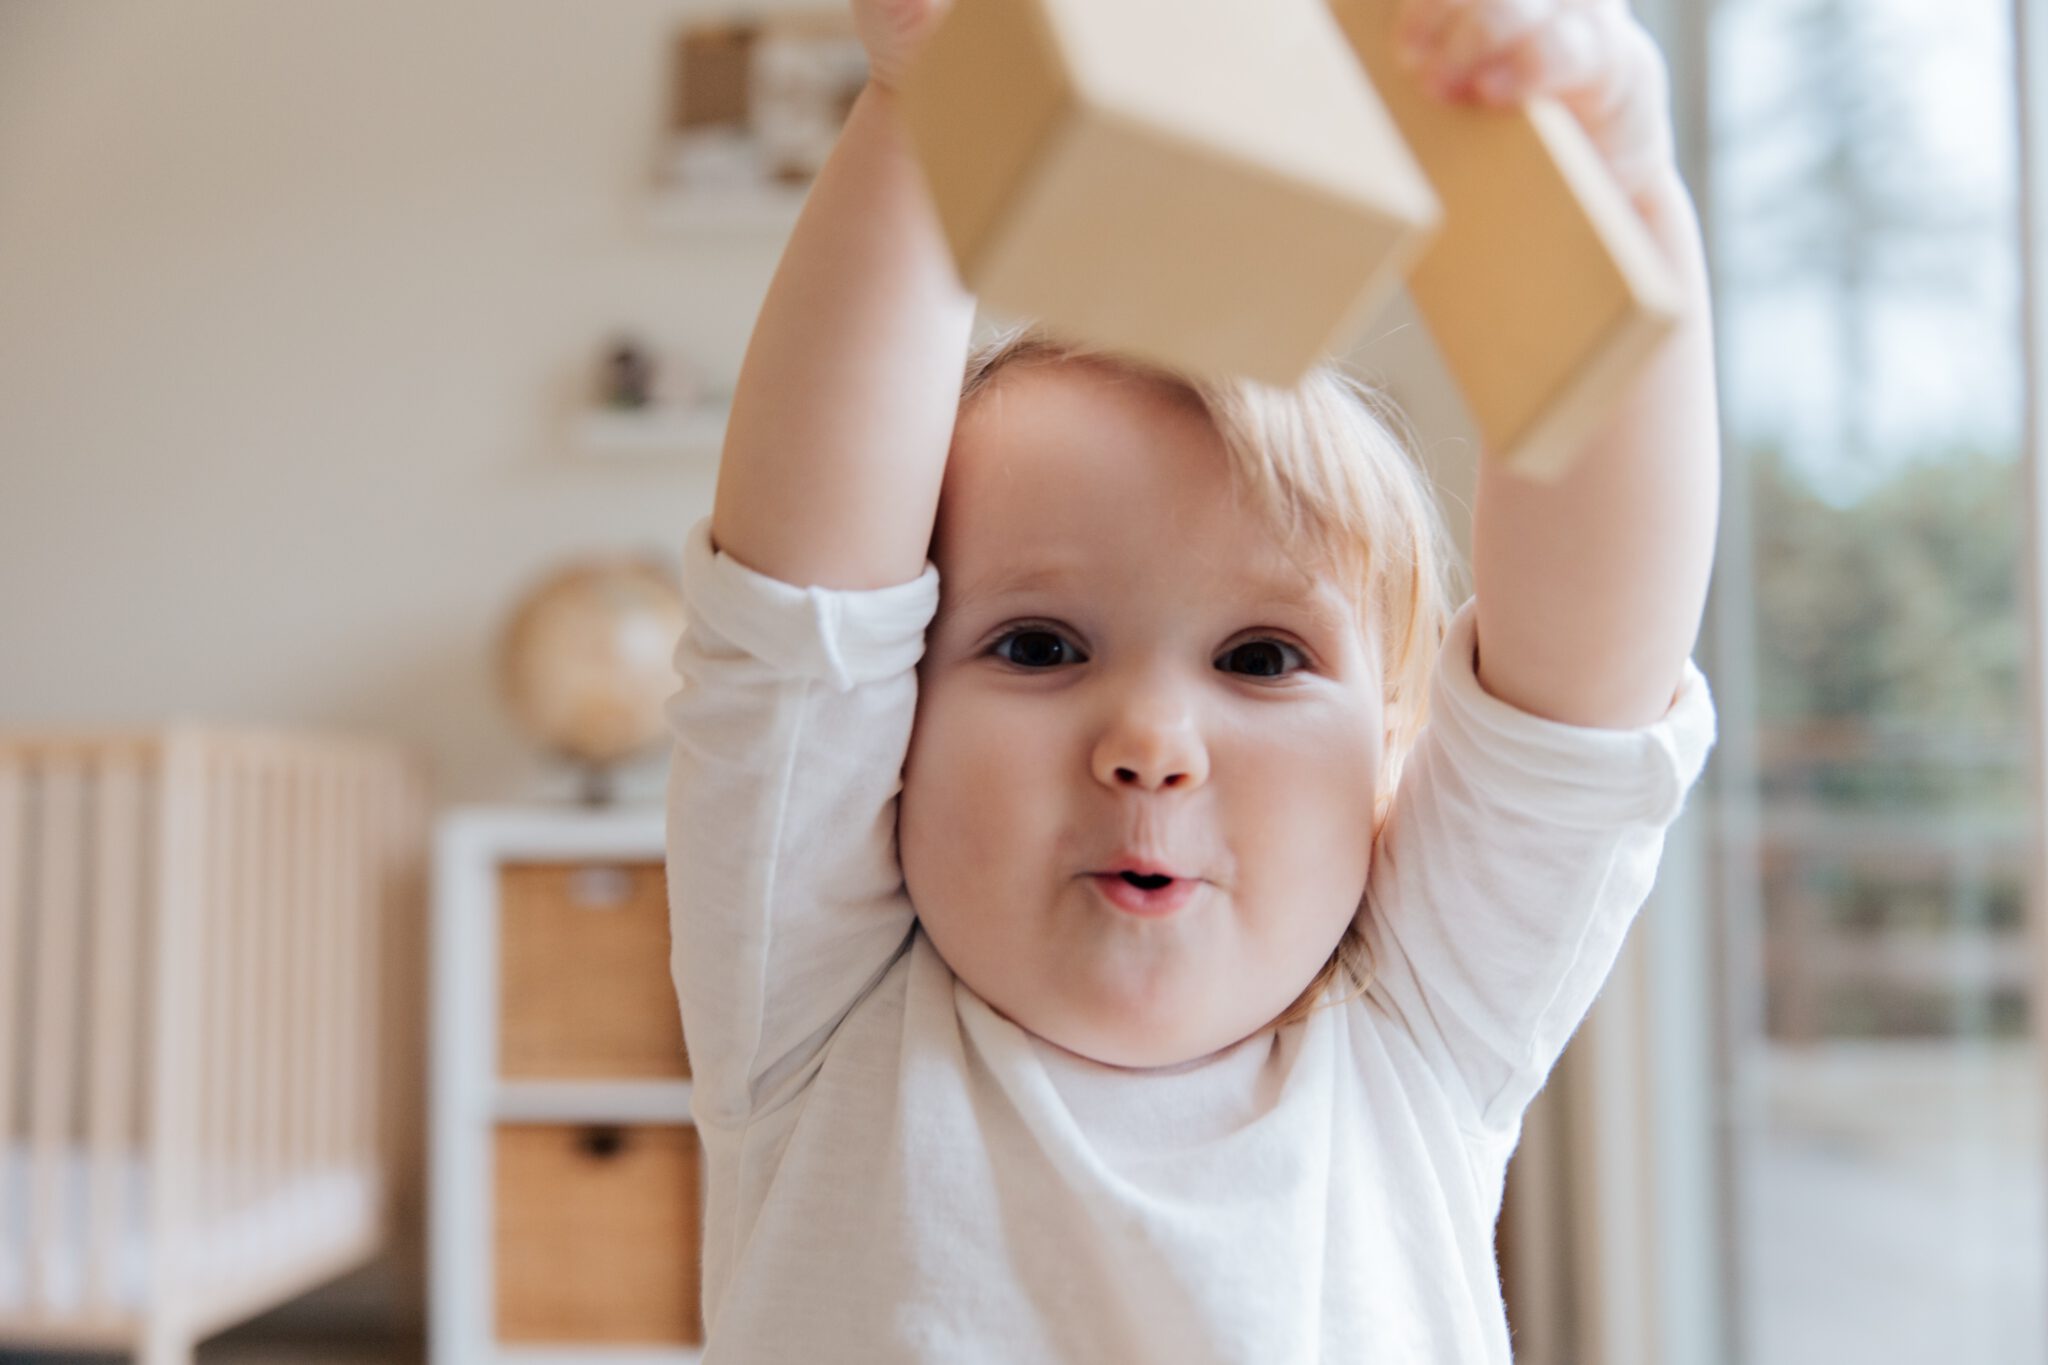 Baby speelt met speelgoed: sommige woorden krijgen andere betekenis na de bevalling